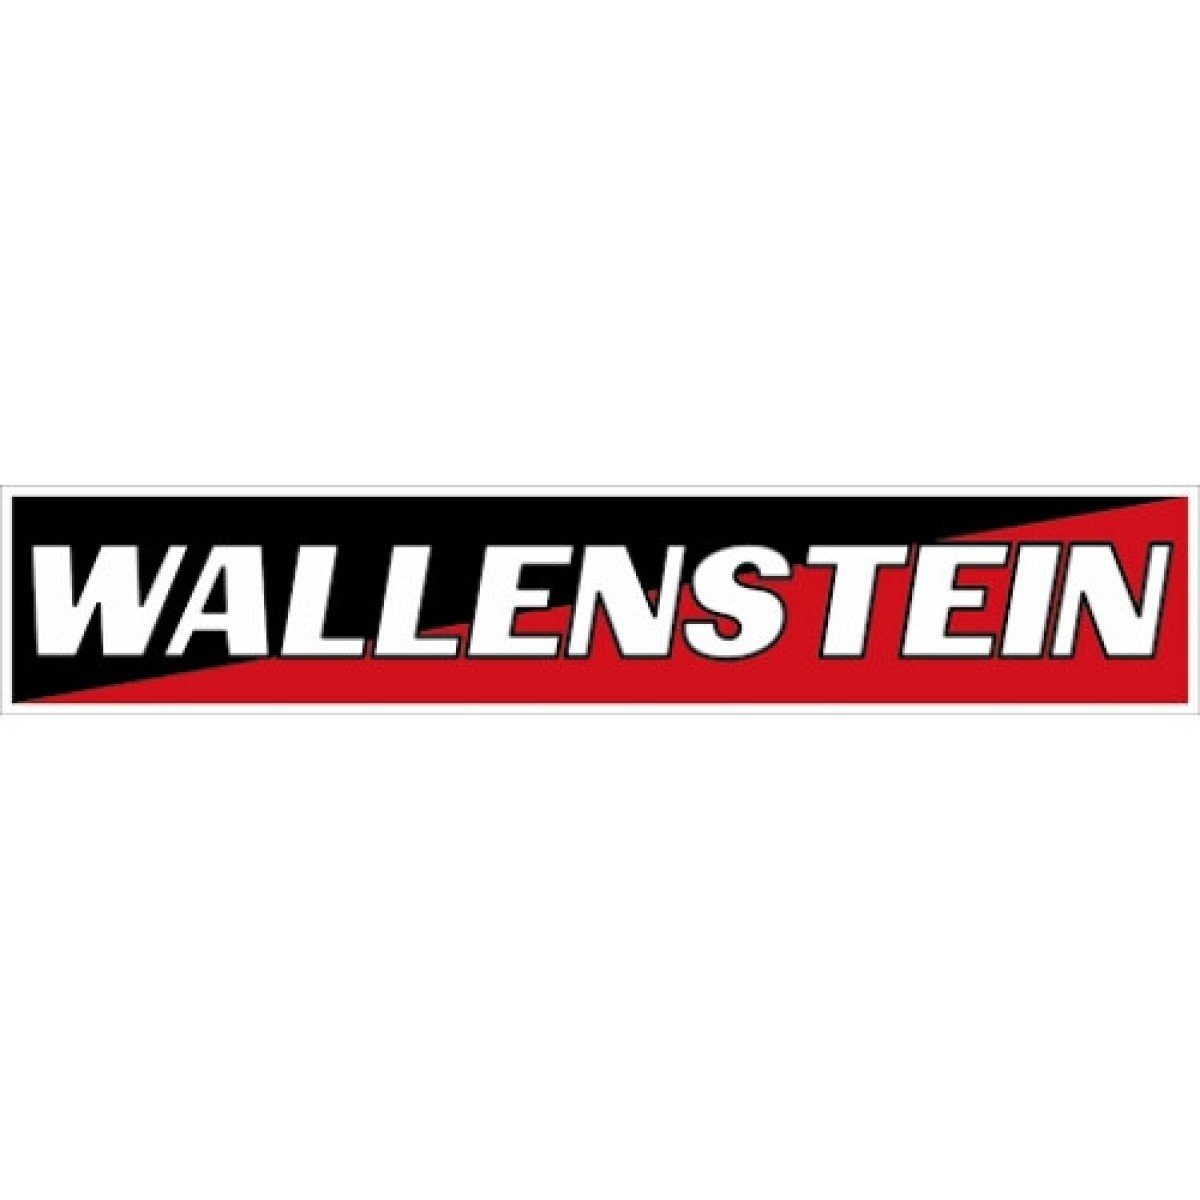 WALLENSTEIN